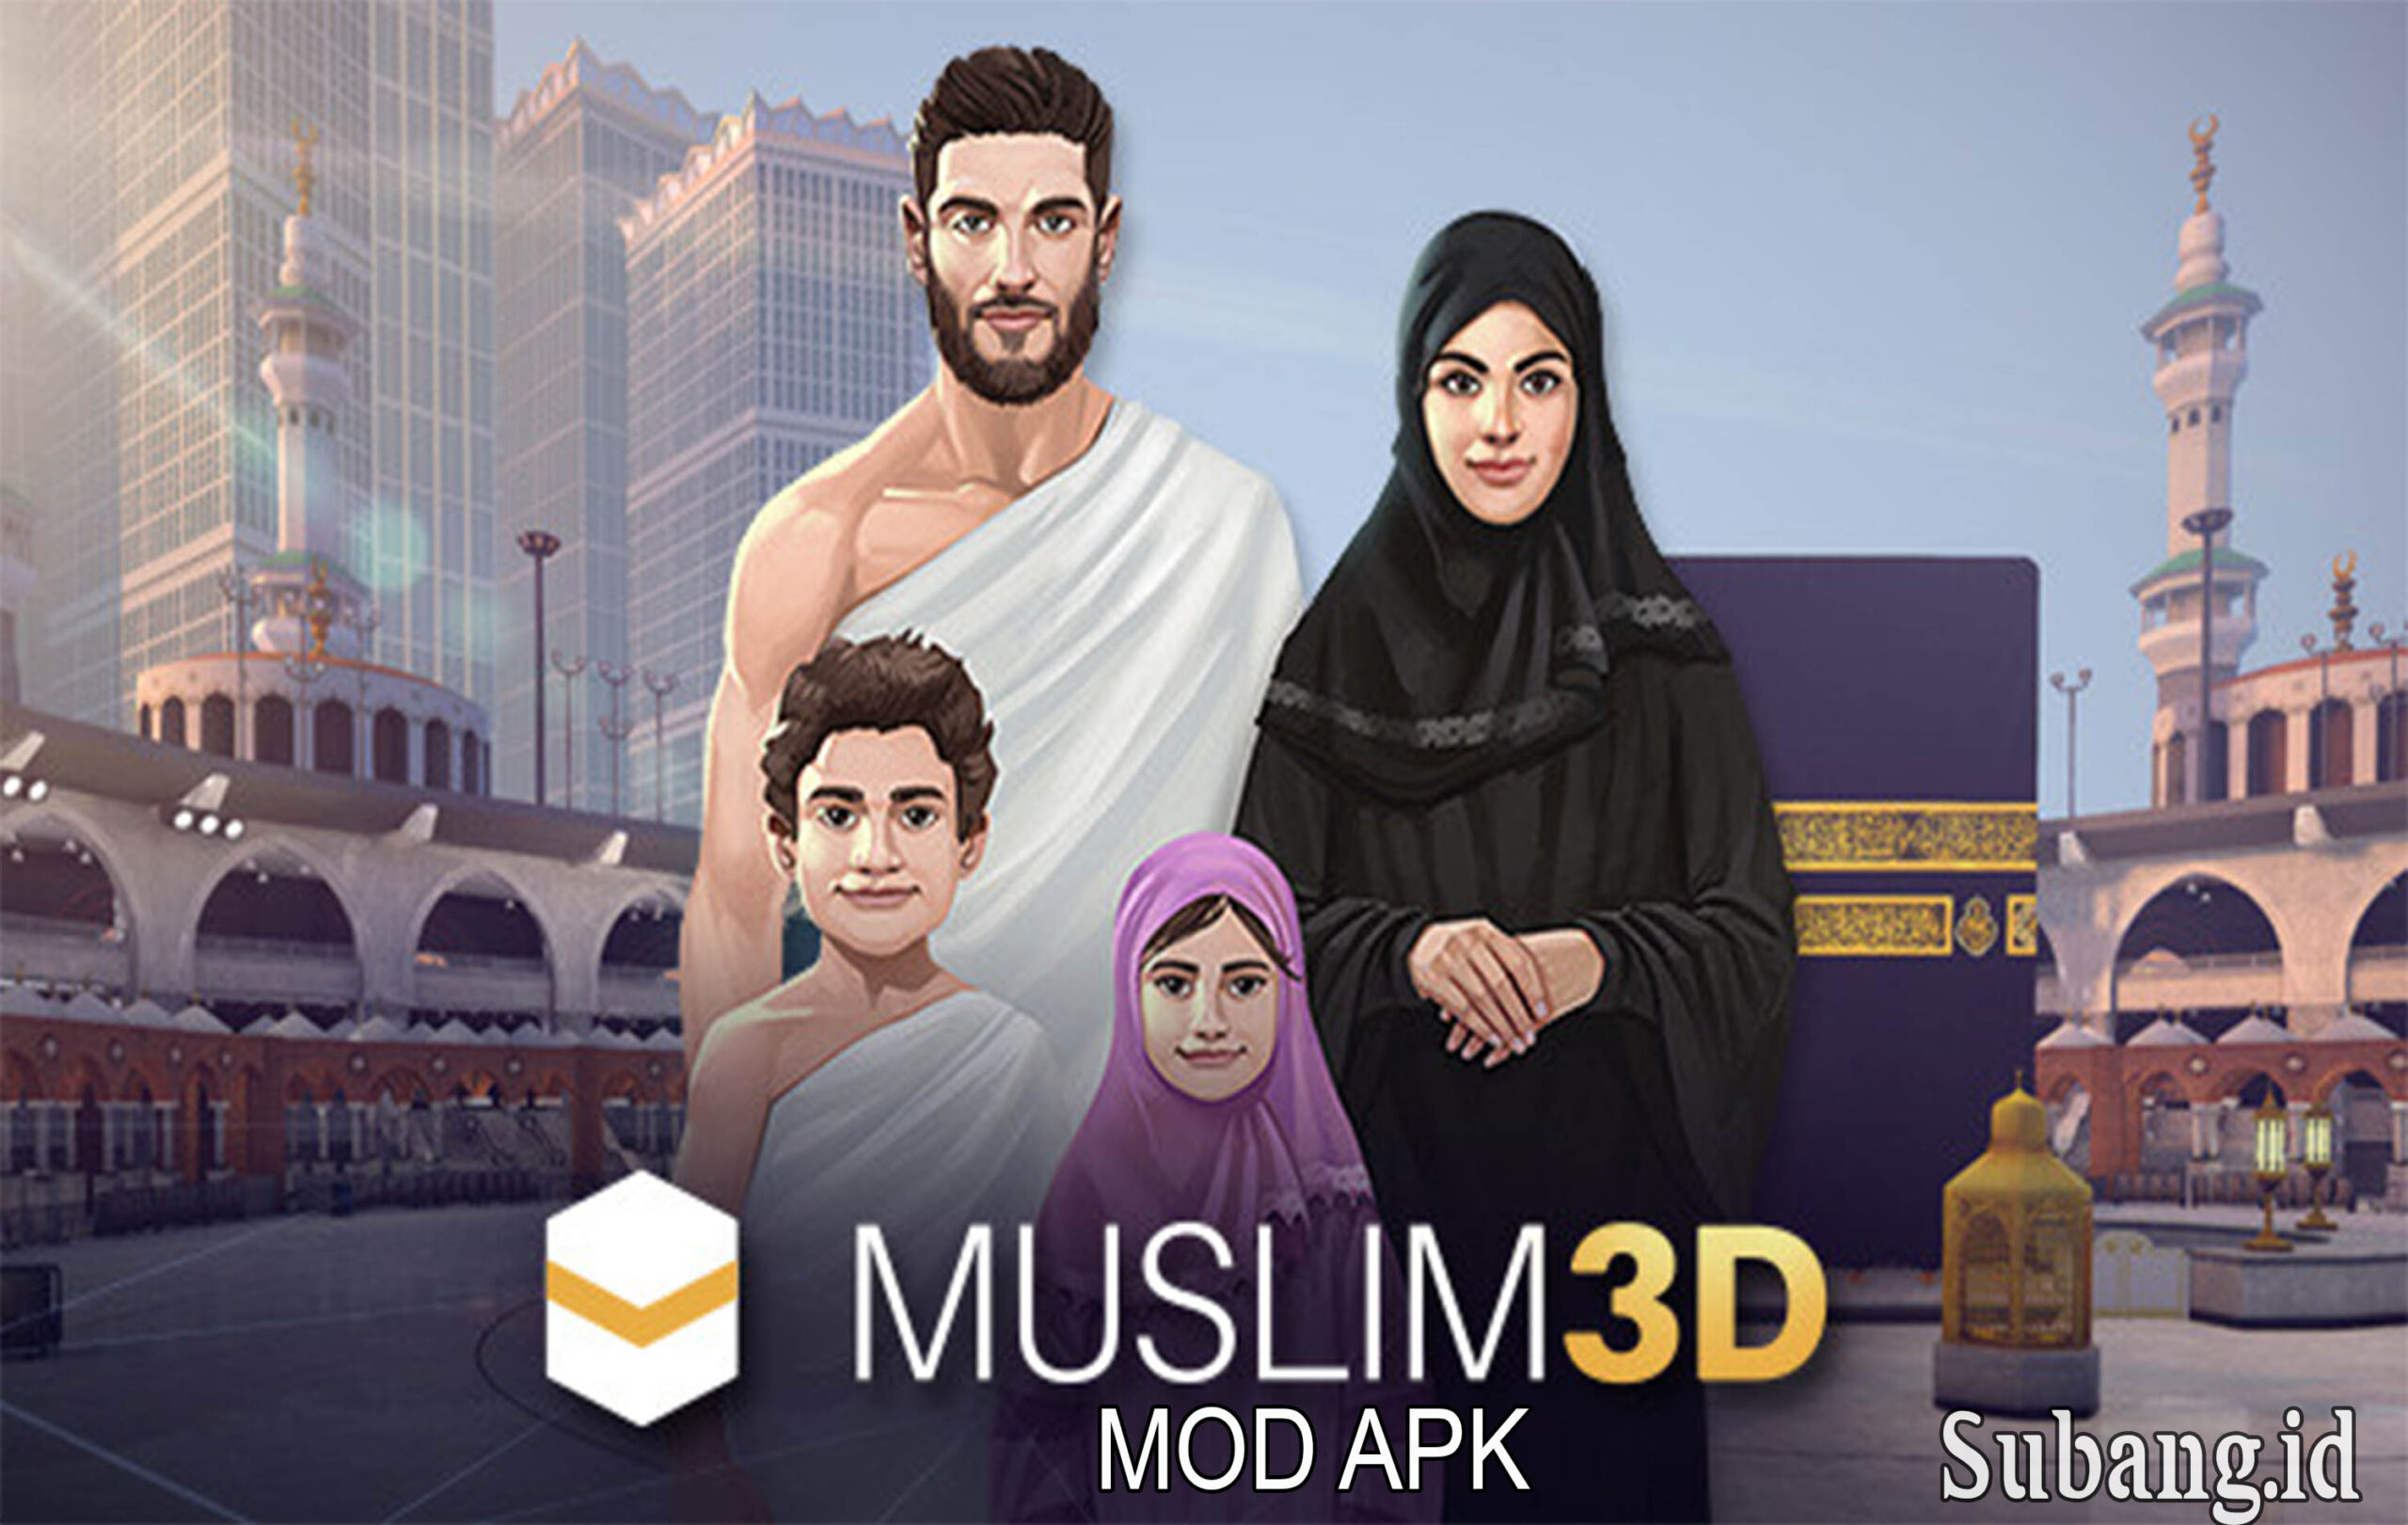 Muslim 3D Mod Apk 